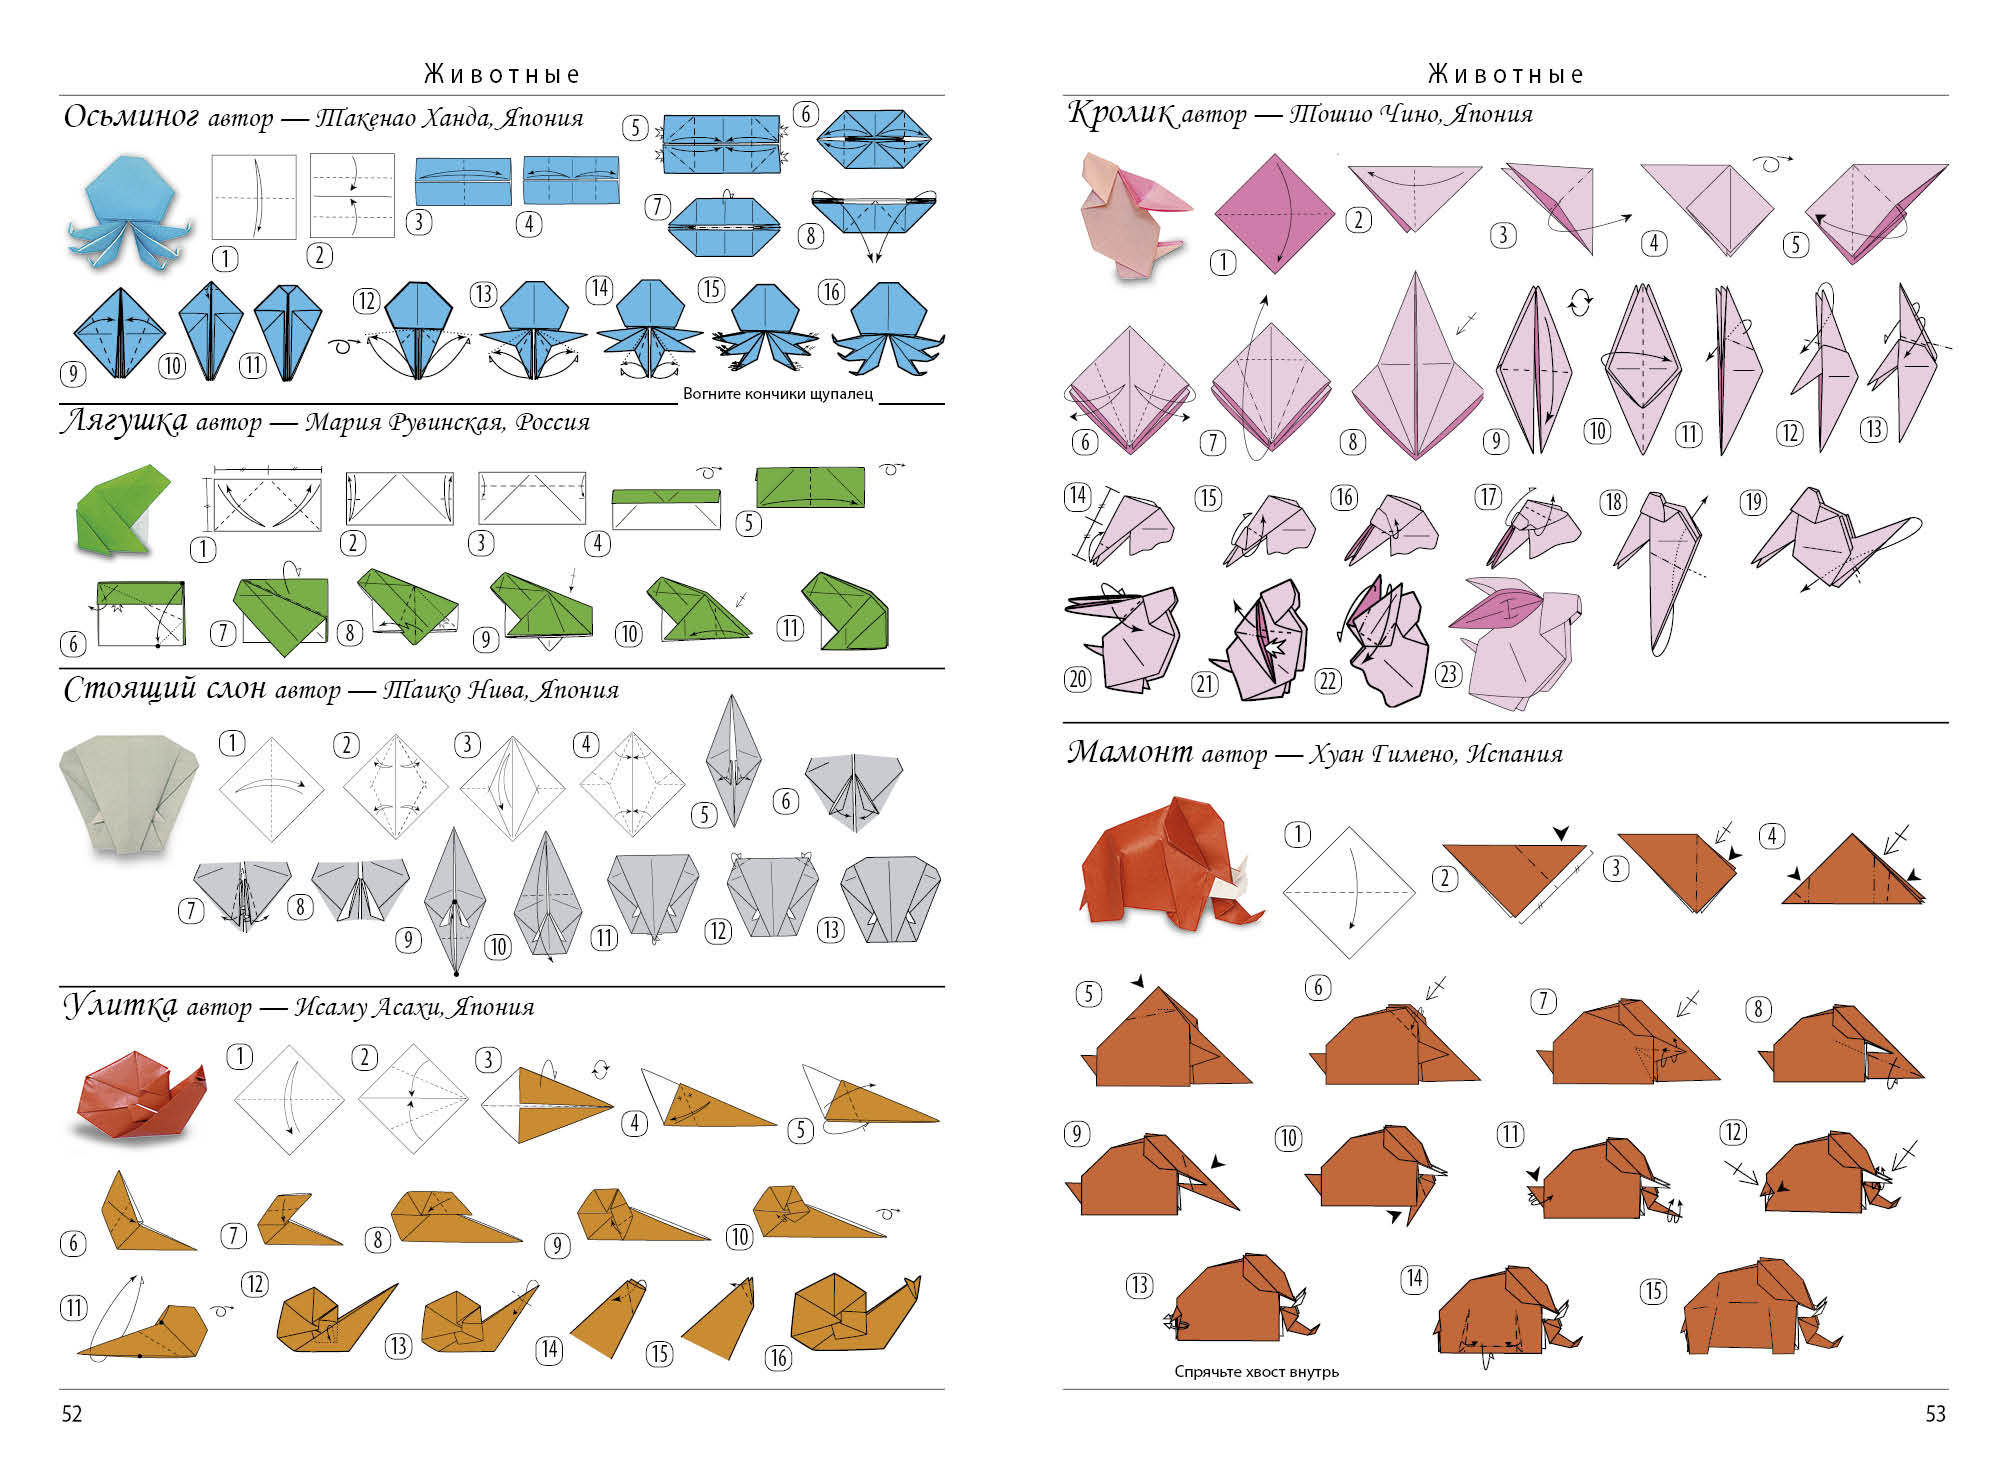 Все об оригами. От простых фигурок до сложных моделей